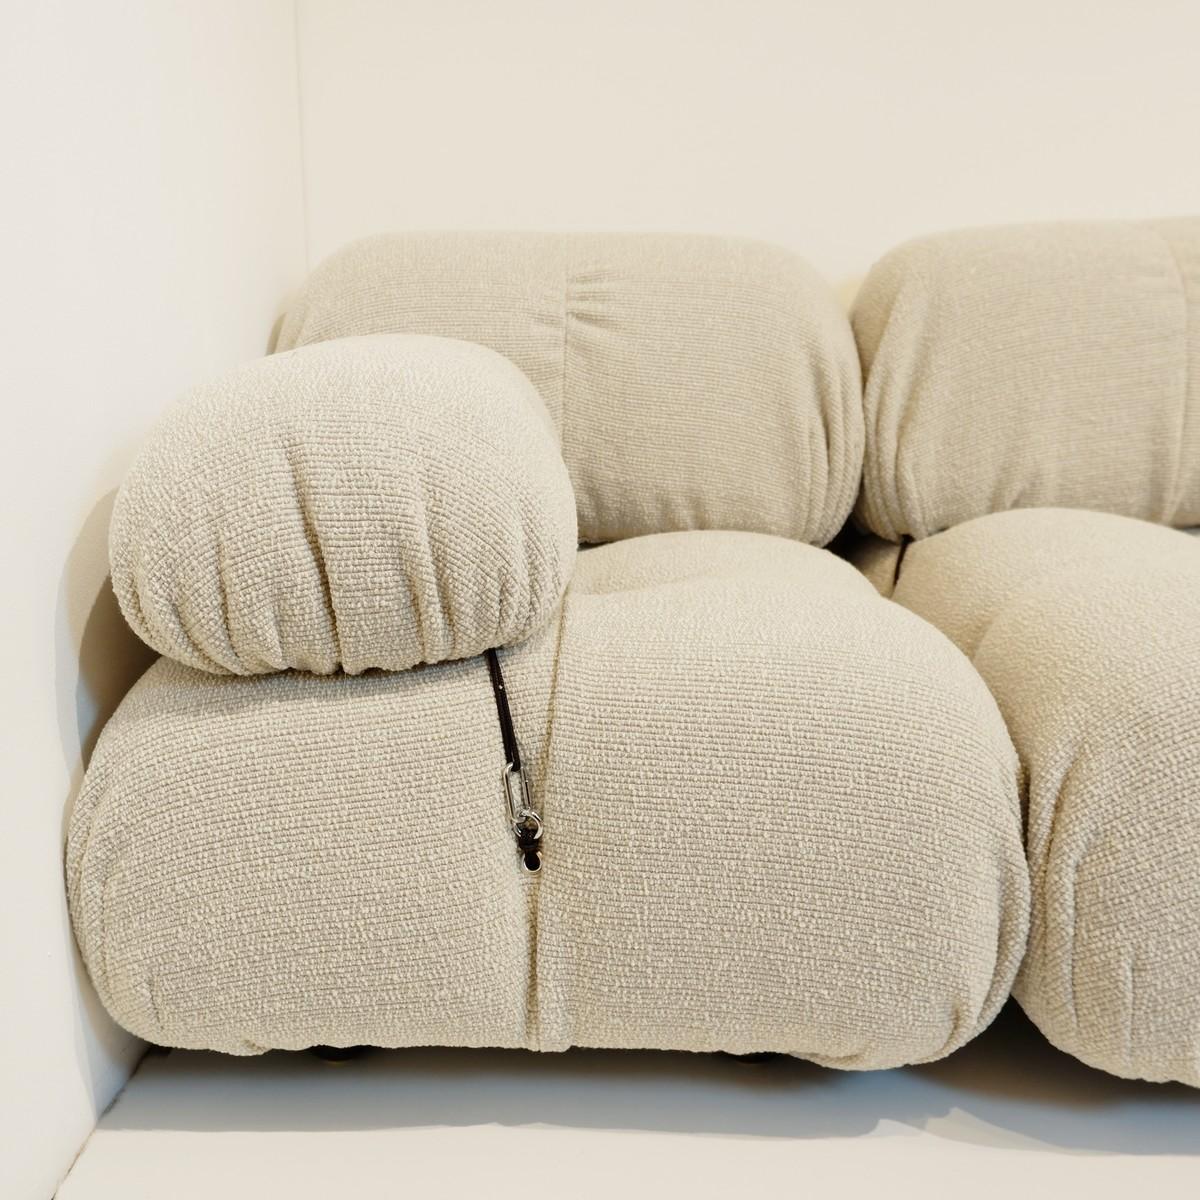 Camaleonda sofa by Mario Bellini for B&B Italia, new upholstery.